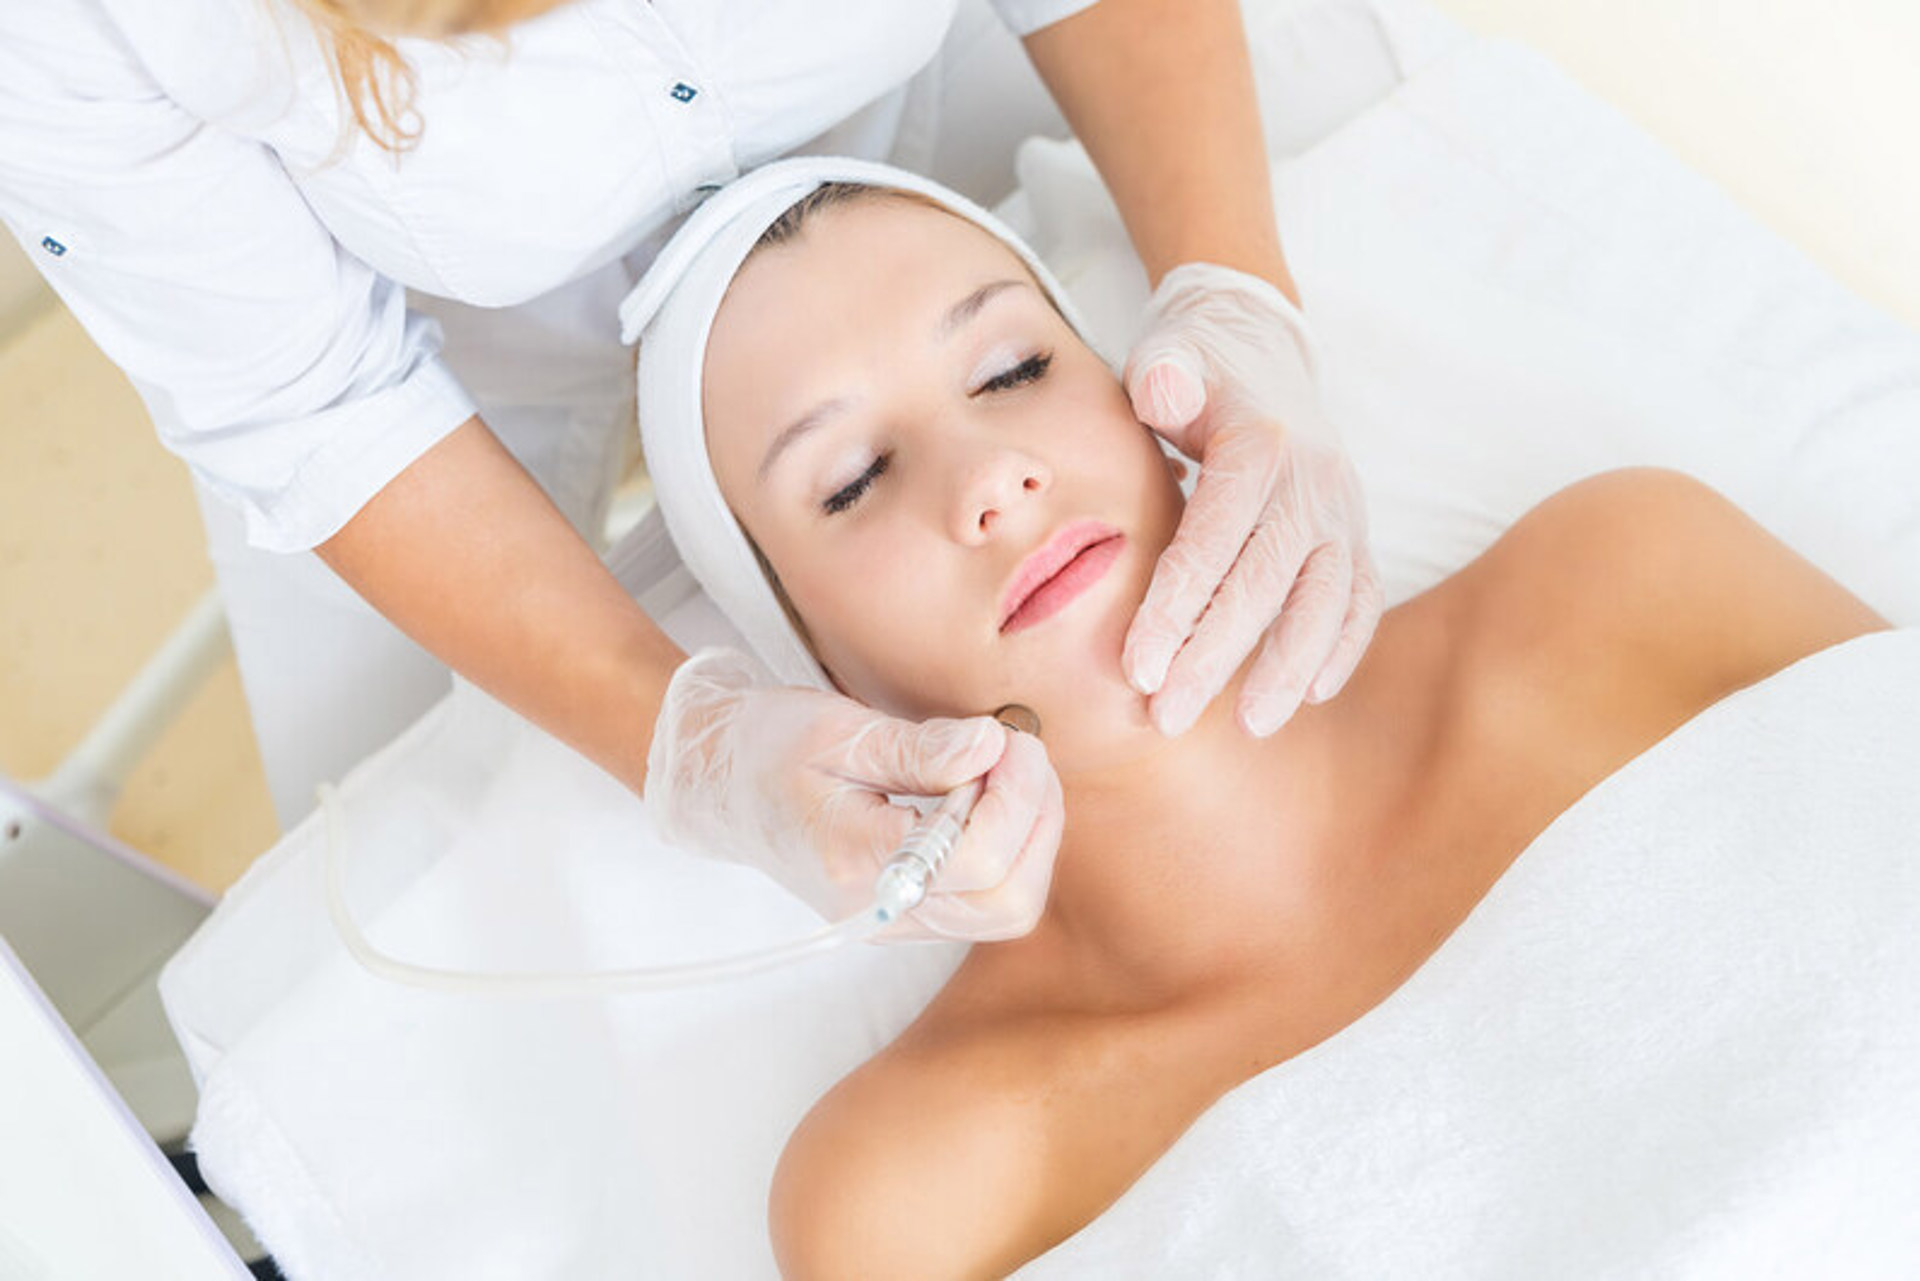 Akne tedavisinde çeşitli estetik uygulamalar yapılıyor. Bu uygulamalar nelerdir, cilde uzun vadede etkileri var mıdır?